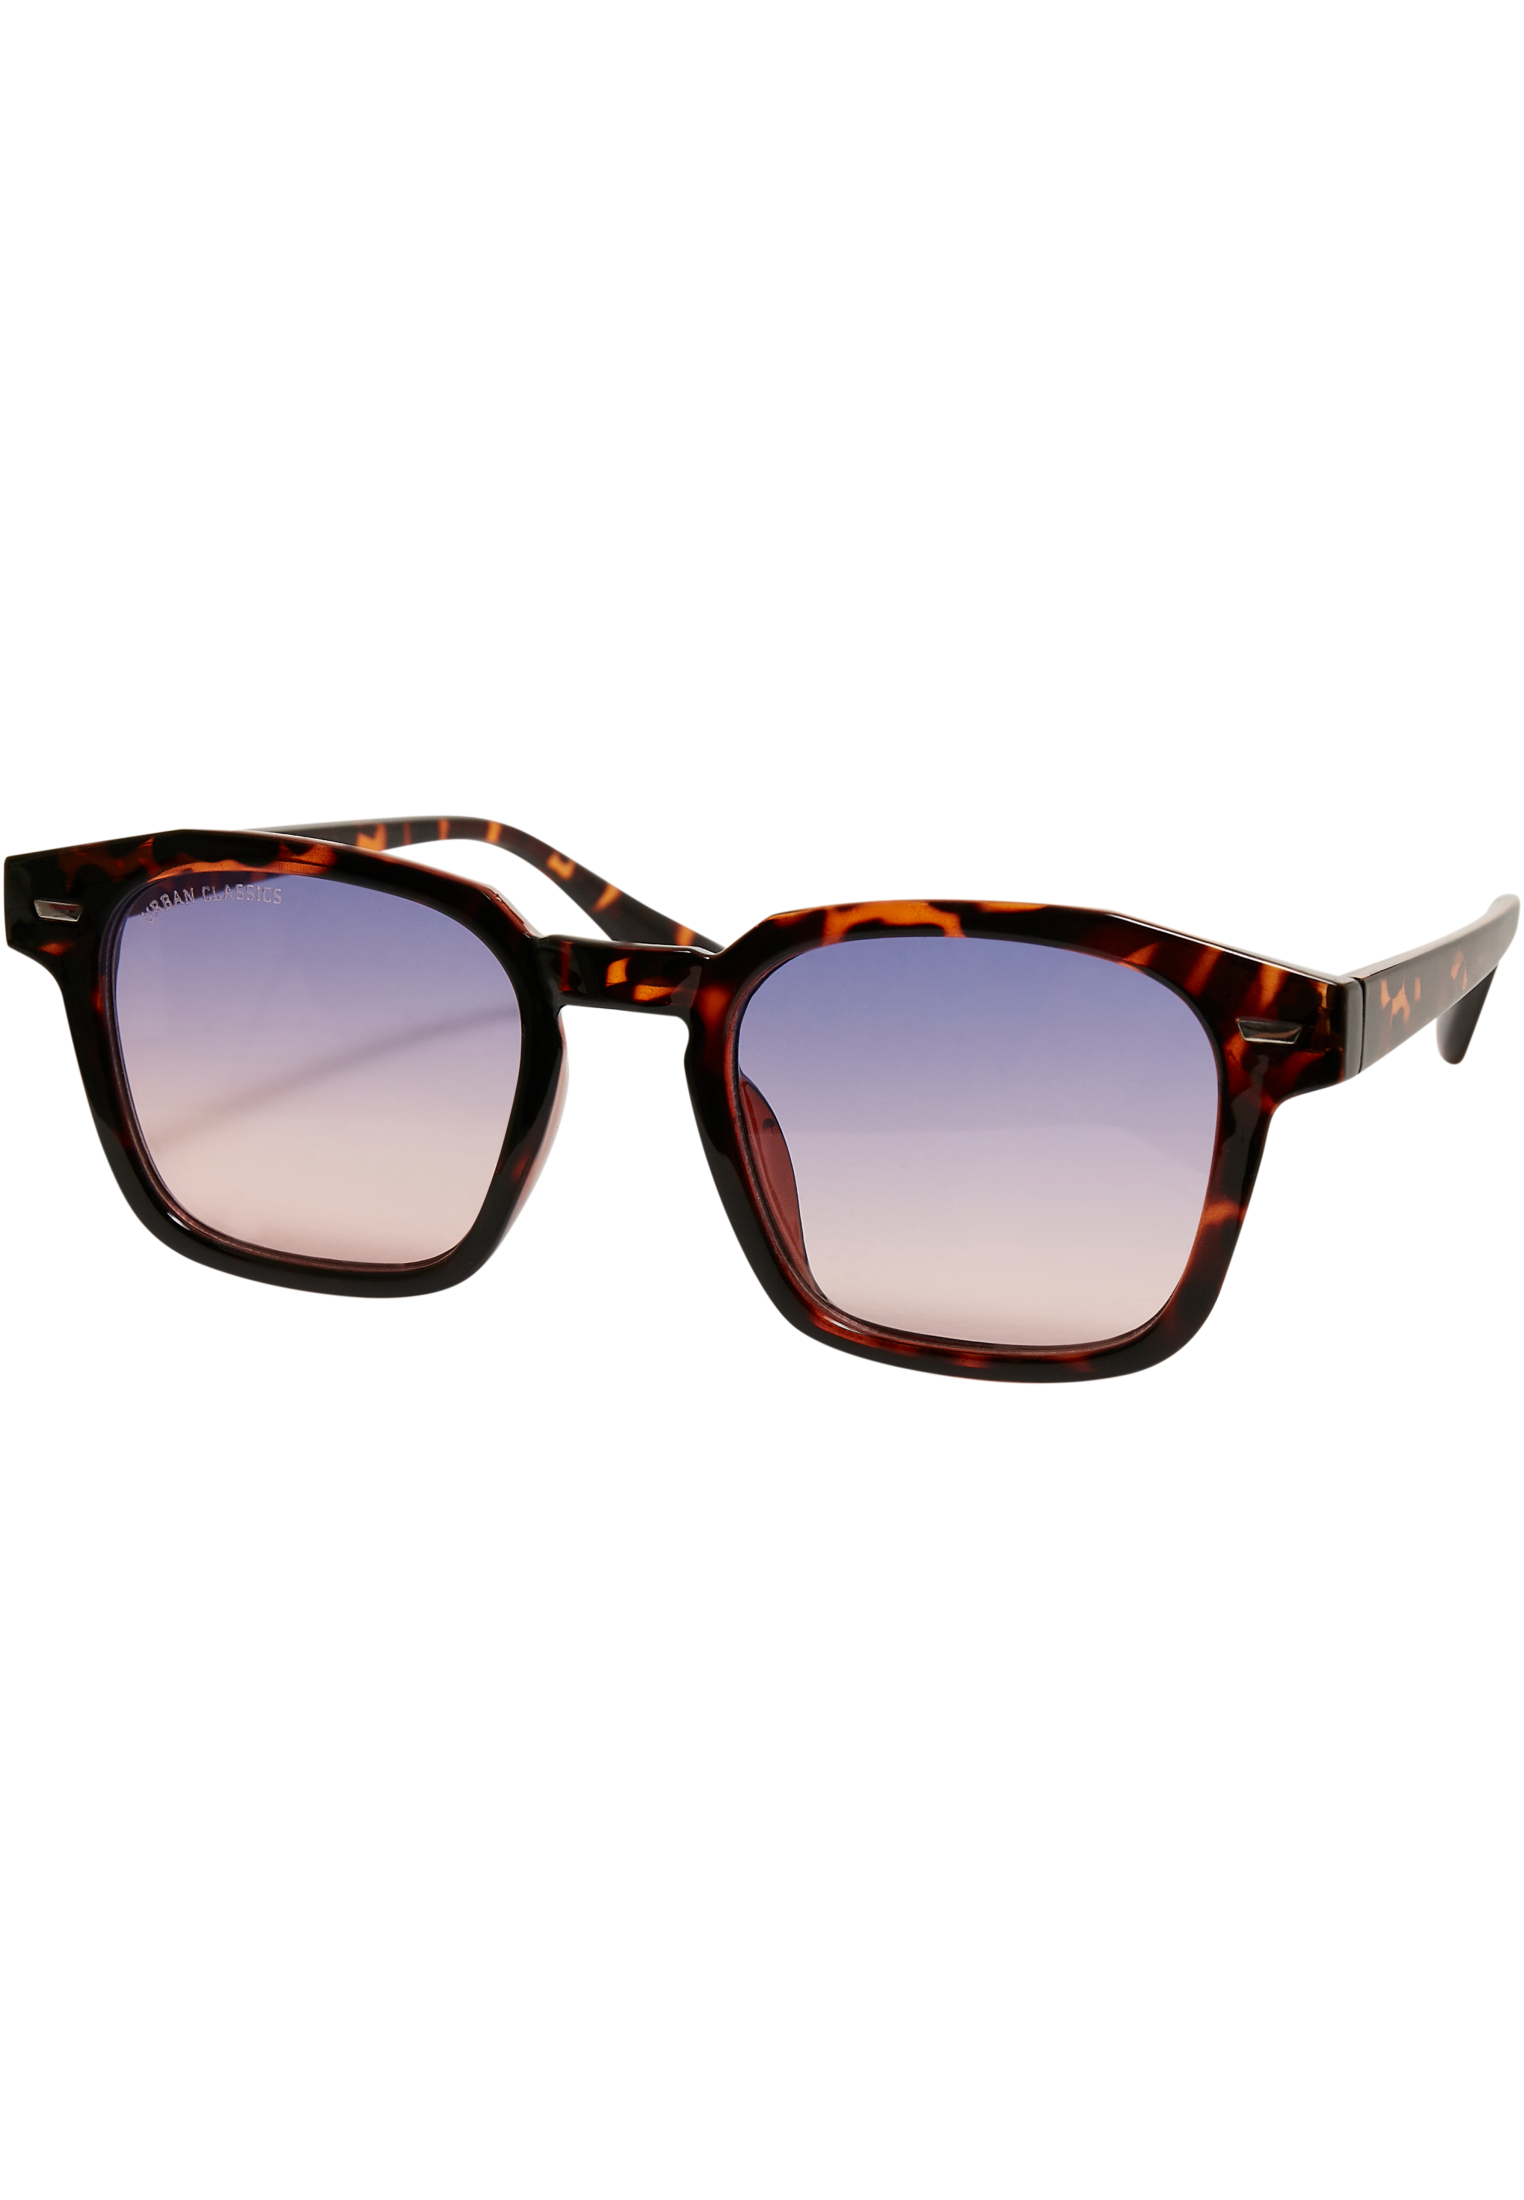 Sunglasses With Case-TB5210 Maui